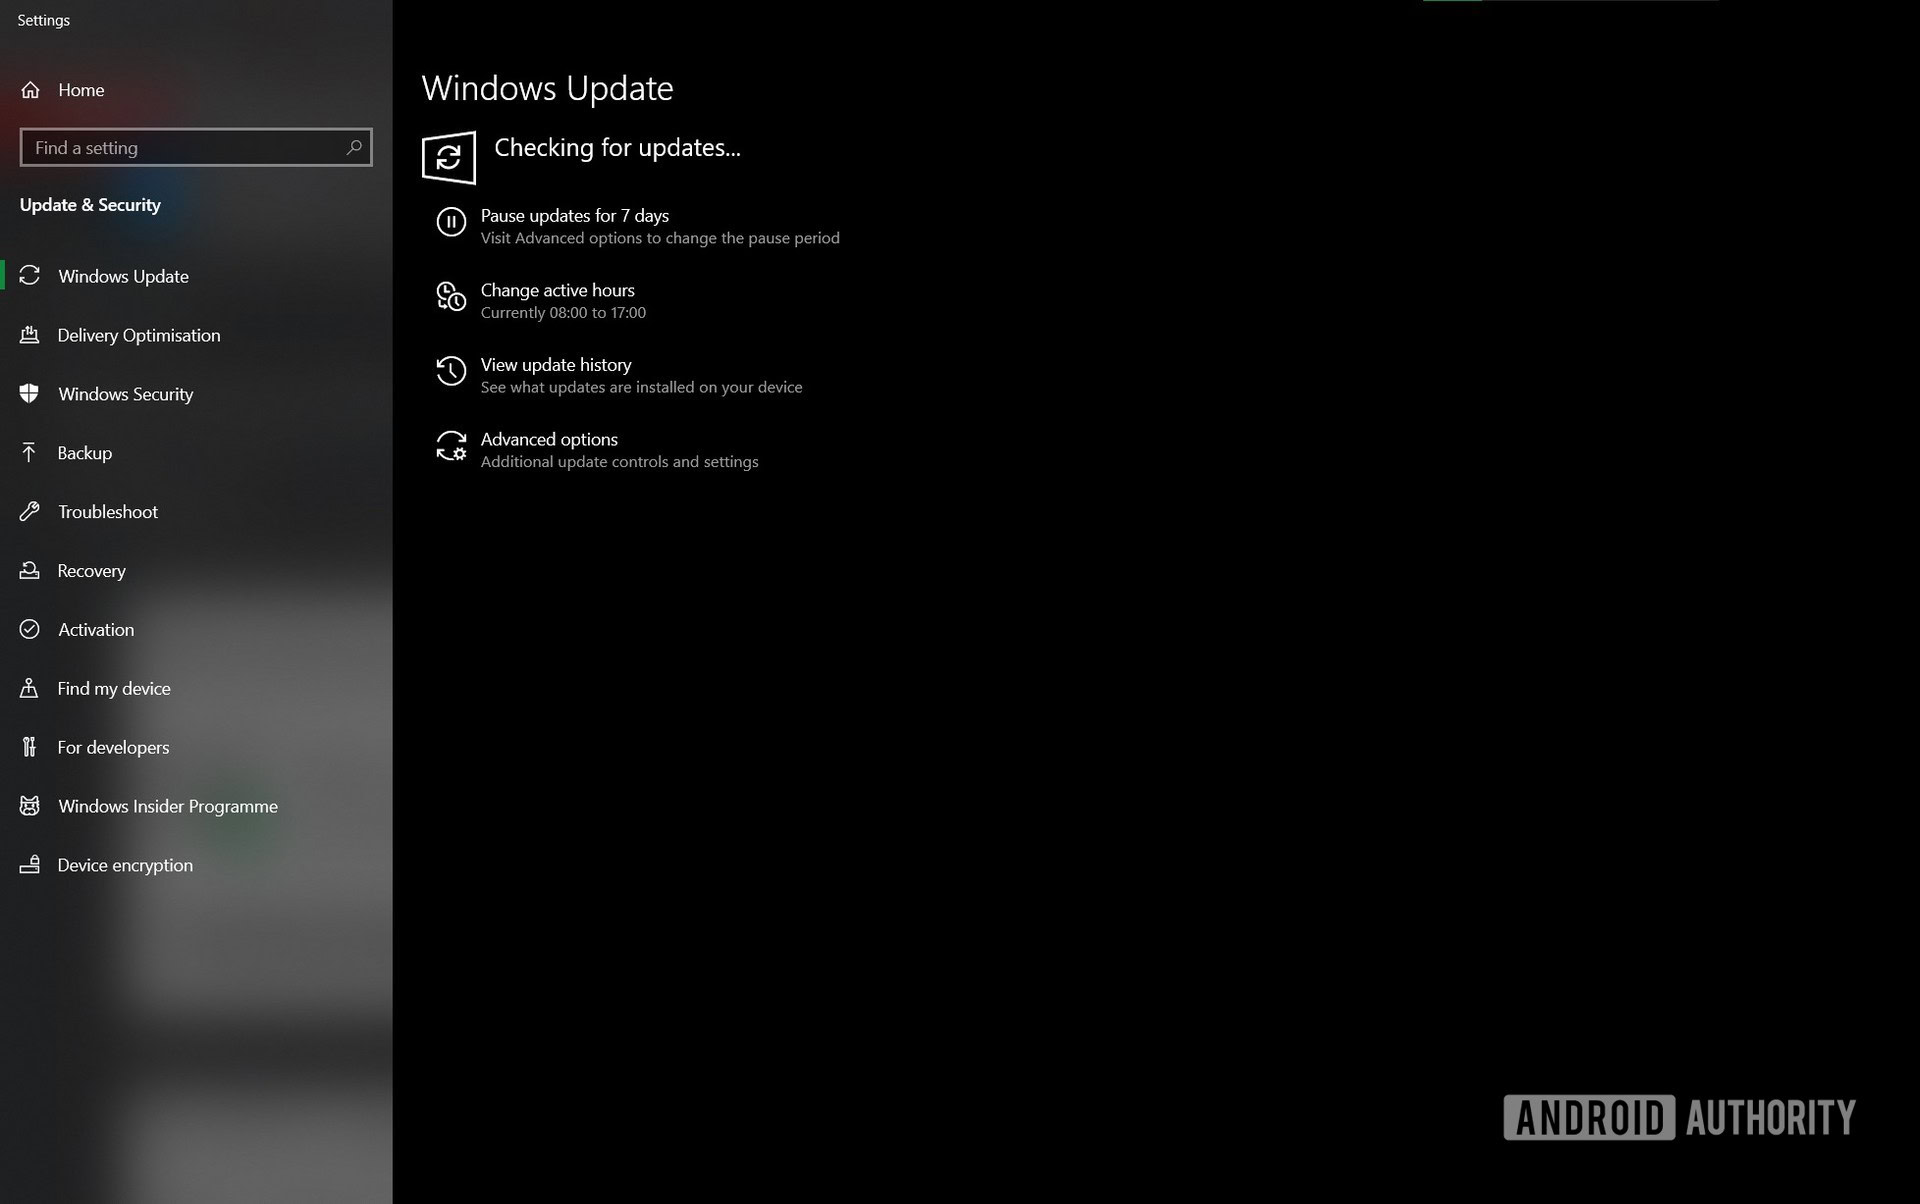 Windows insider program checking for update